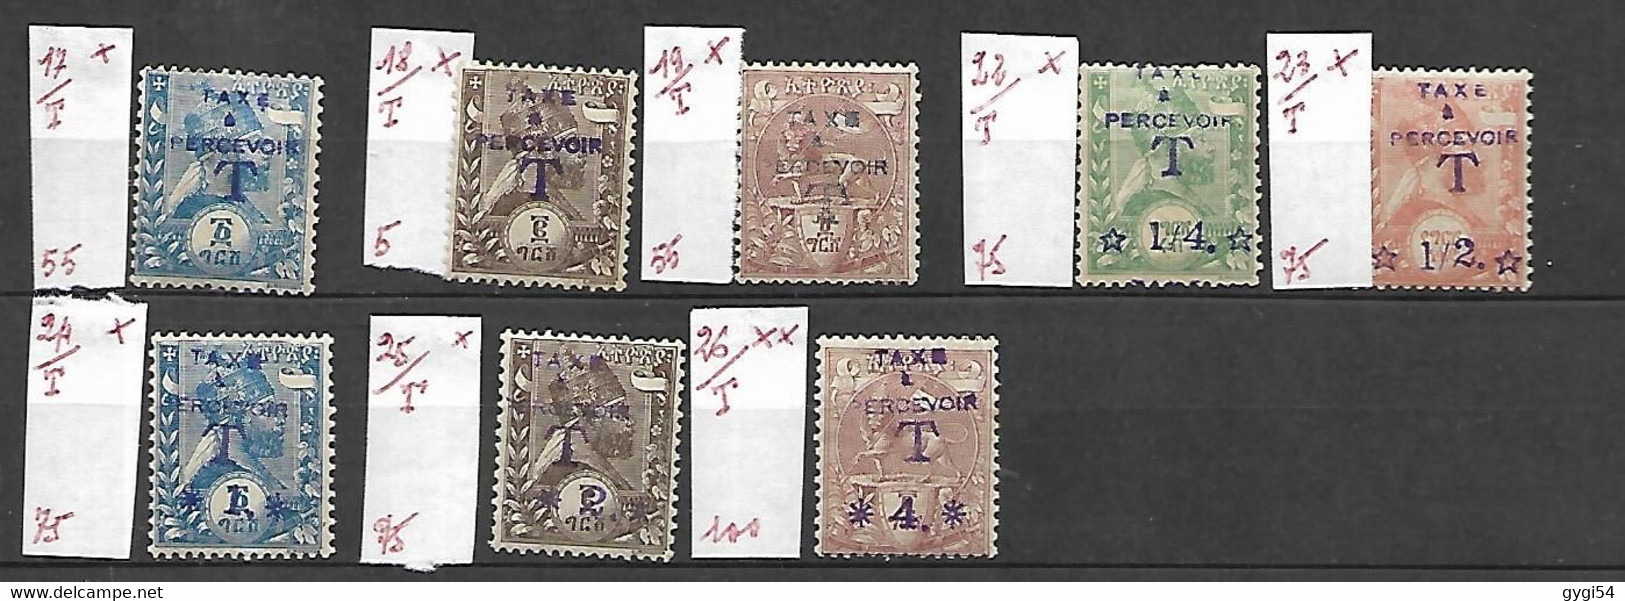 Ethiopie  1905 Timbres Taxe   Cat  Y T N° 17, 18, 19 ,22, 23, 24 ,25,26     N*   MLH - Ethiopie